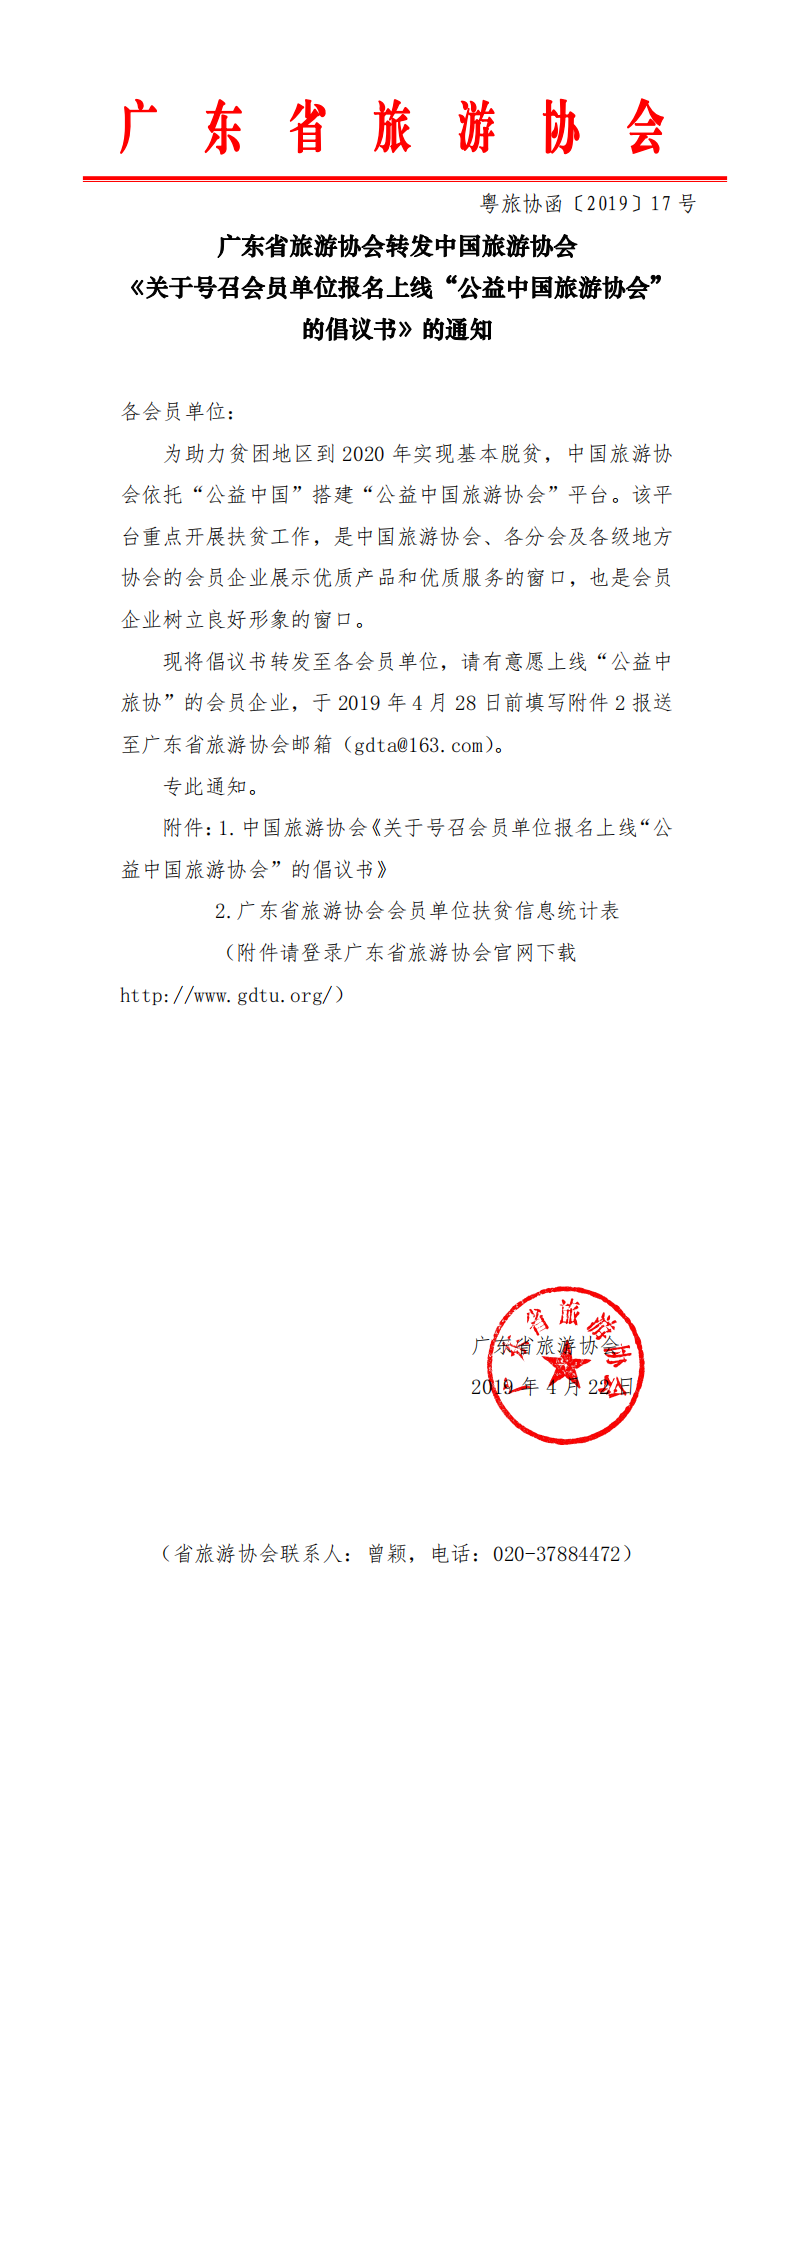 广东省旅游协会转发中国旅游协会《关于号召会员单位报名上线“公益中国旅游协会”的倡议书》的通知_0